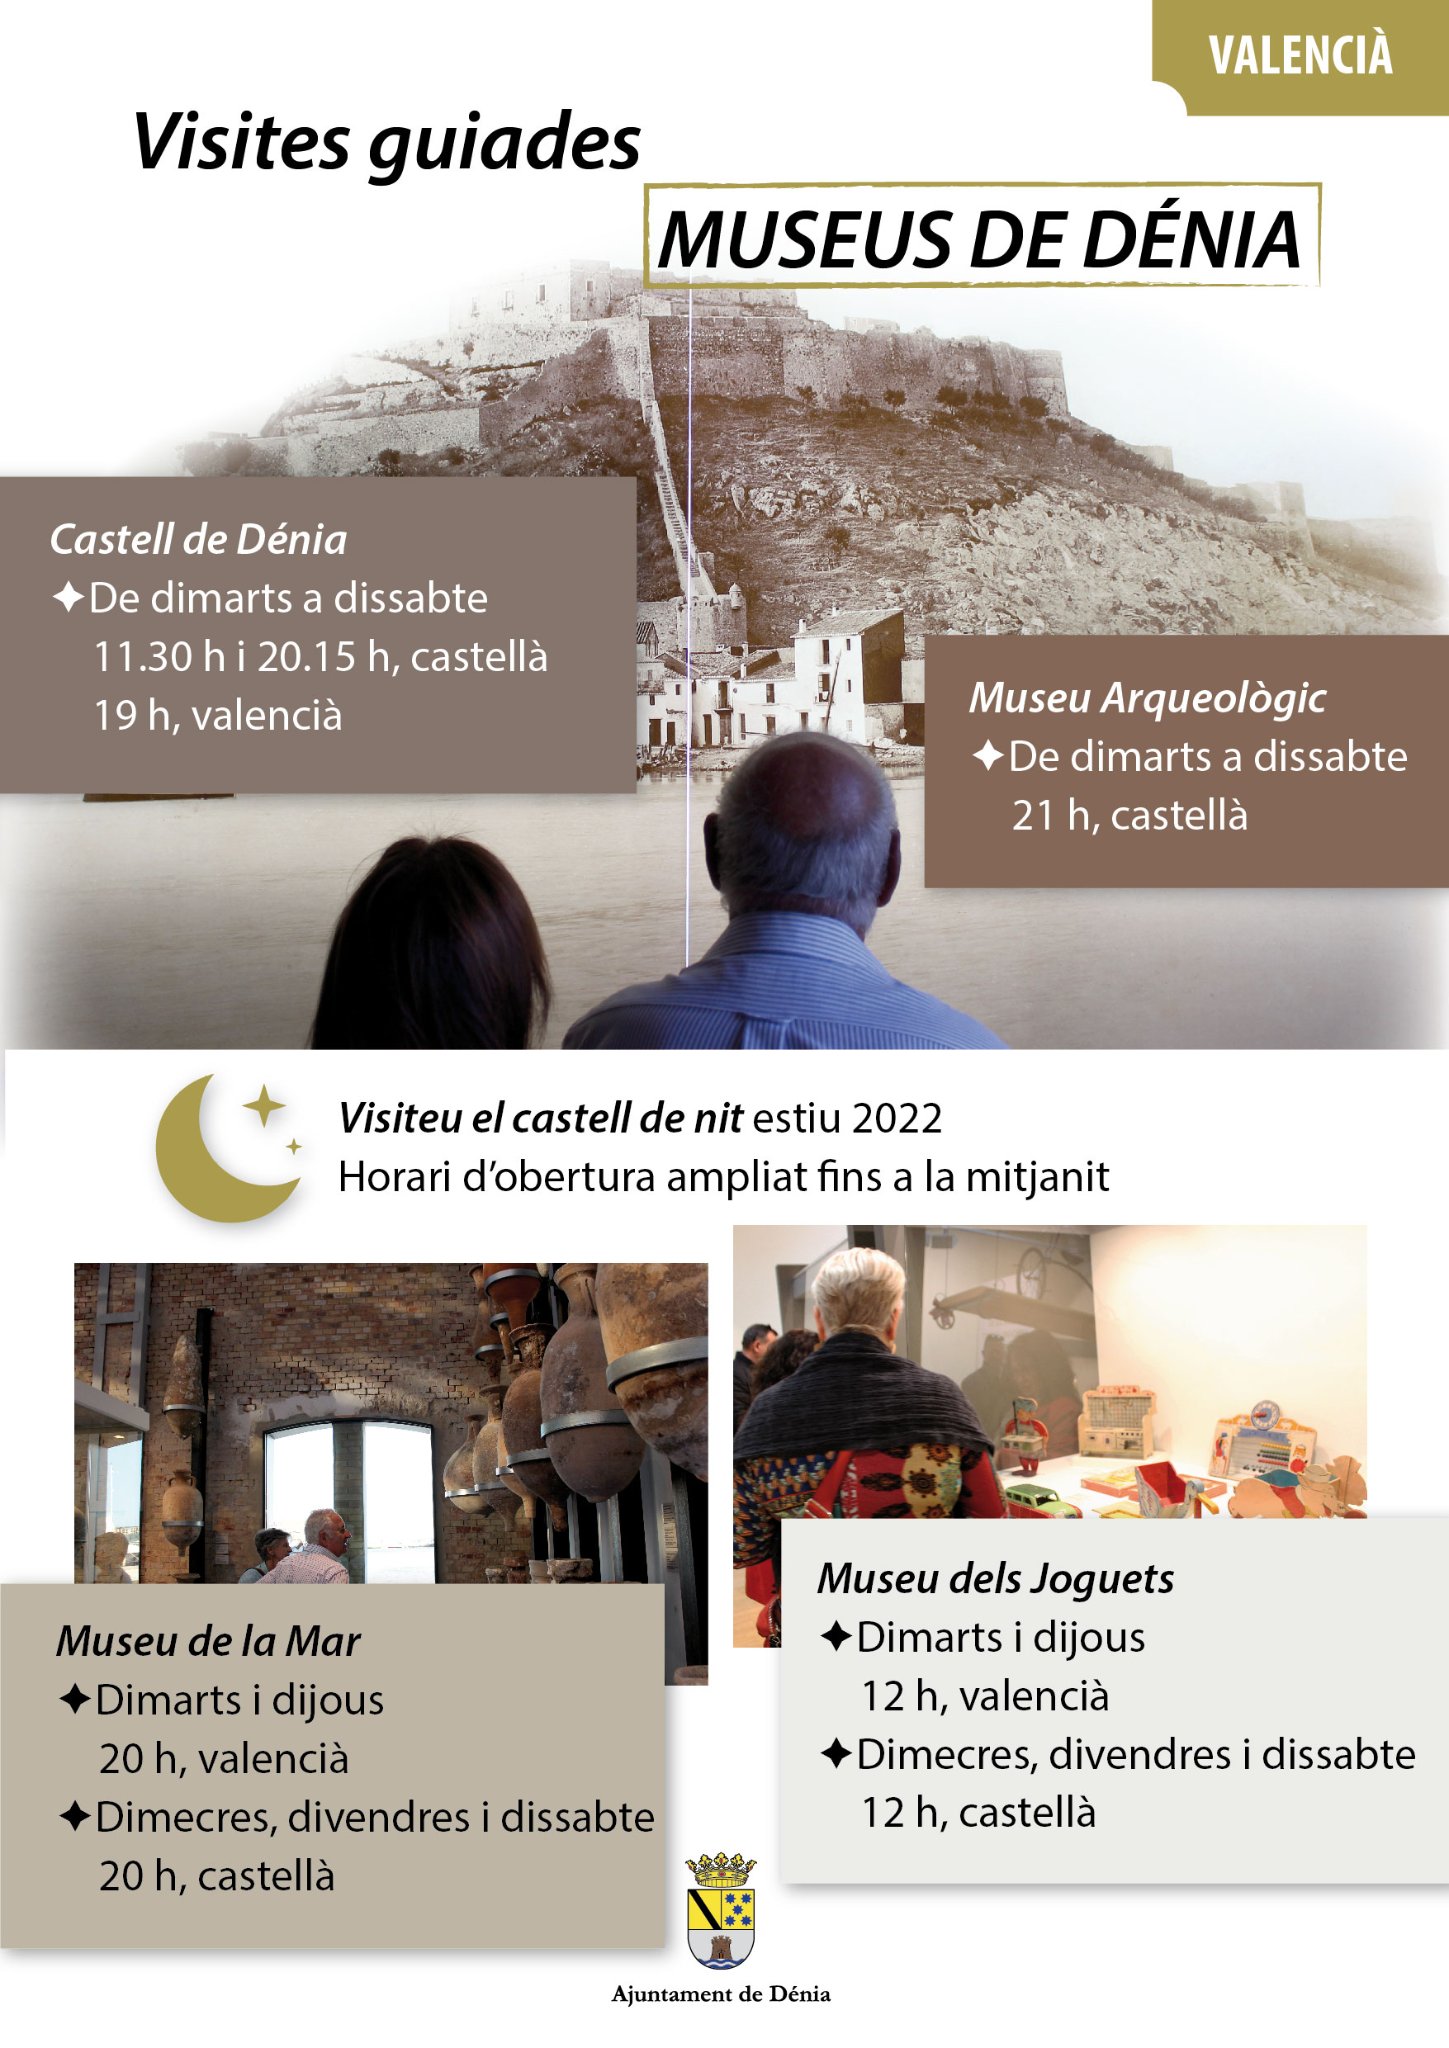 La oferta de visitas guiadas en el Castillo y los museos de la ciudad durante el verano inco...